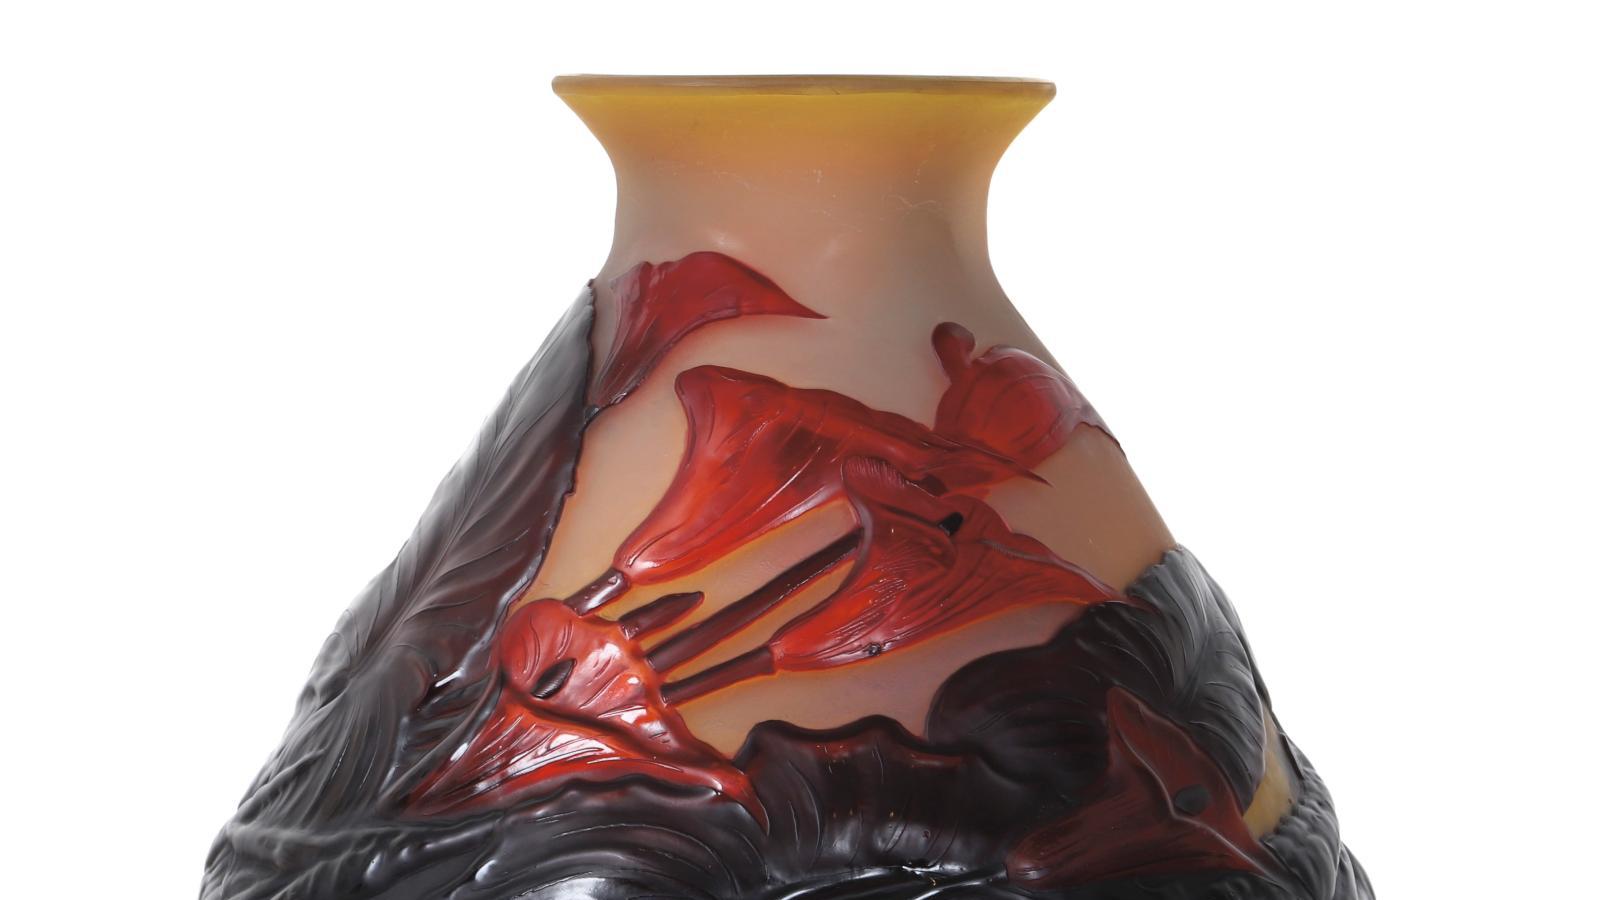 Établissements Gallé, vase aux arums, 1925, verre soufflé-moulé de forme toupie conique... Un vase Gallé aux accents floraux